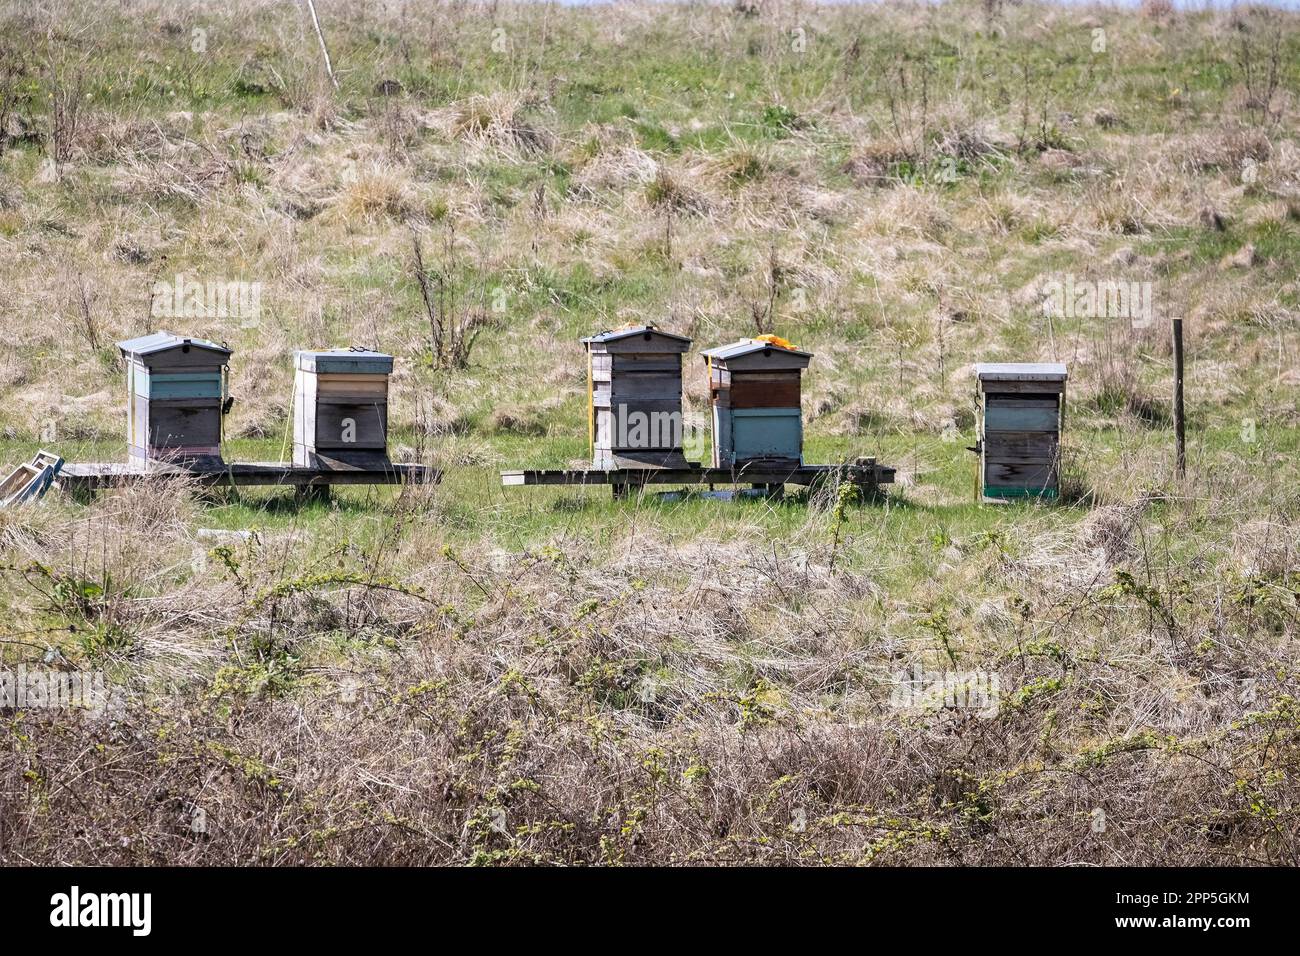 Cinq ruches ou apiaires sur une banque herbeuse dans une réserve naturelle pour encourager les abeilles à coloniser les ruches et à vivre et élever leurs jeunes Banque D'Images